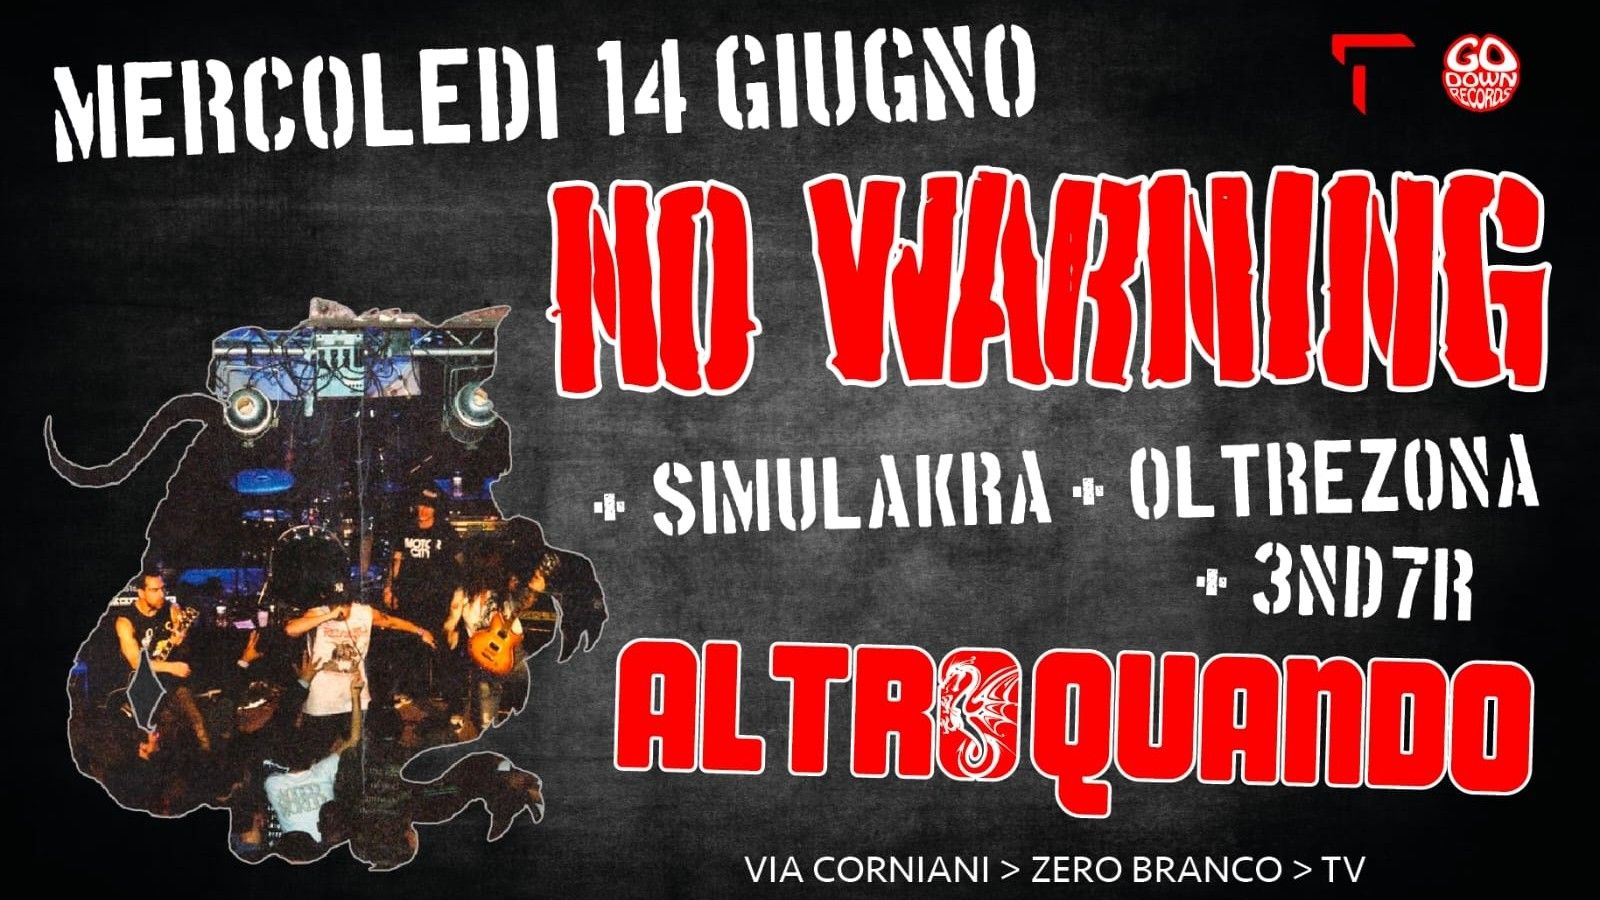 No Warning ("Ill Blood" Set) + Simulakra + Oltrezona + 3ND7R